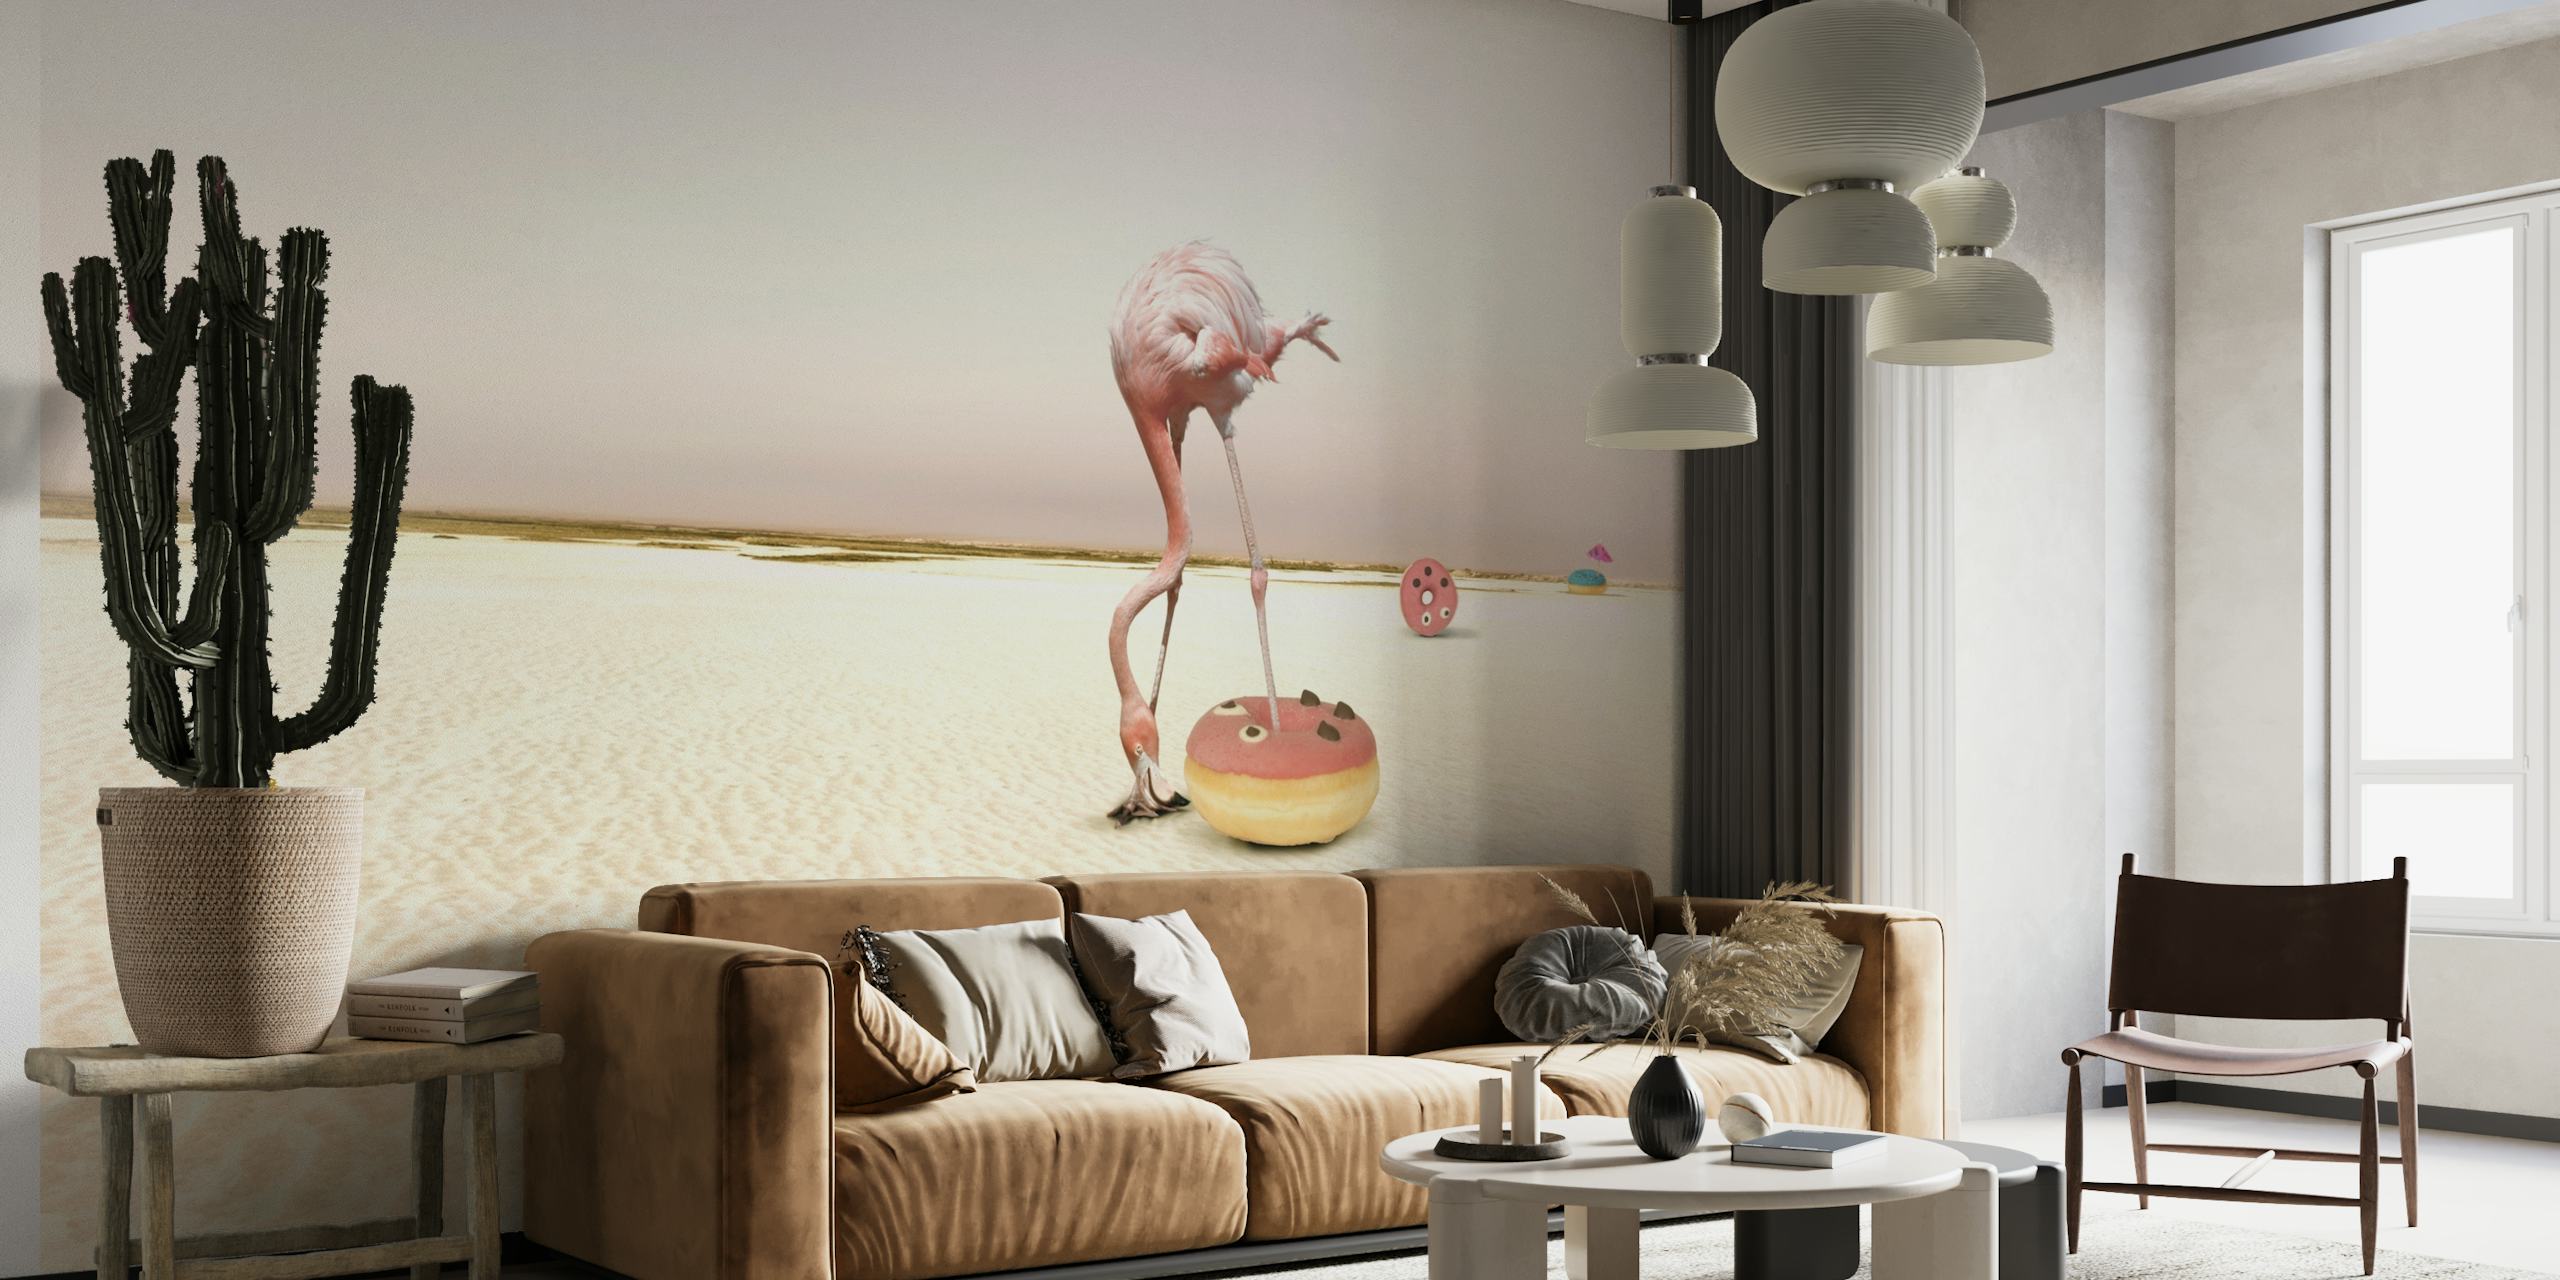 Donutbeach wallpaper